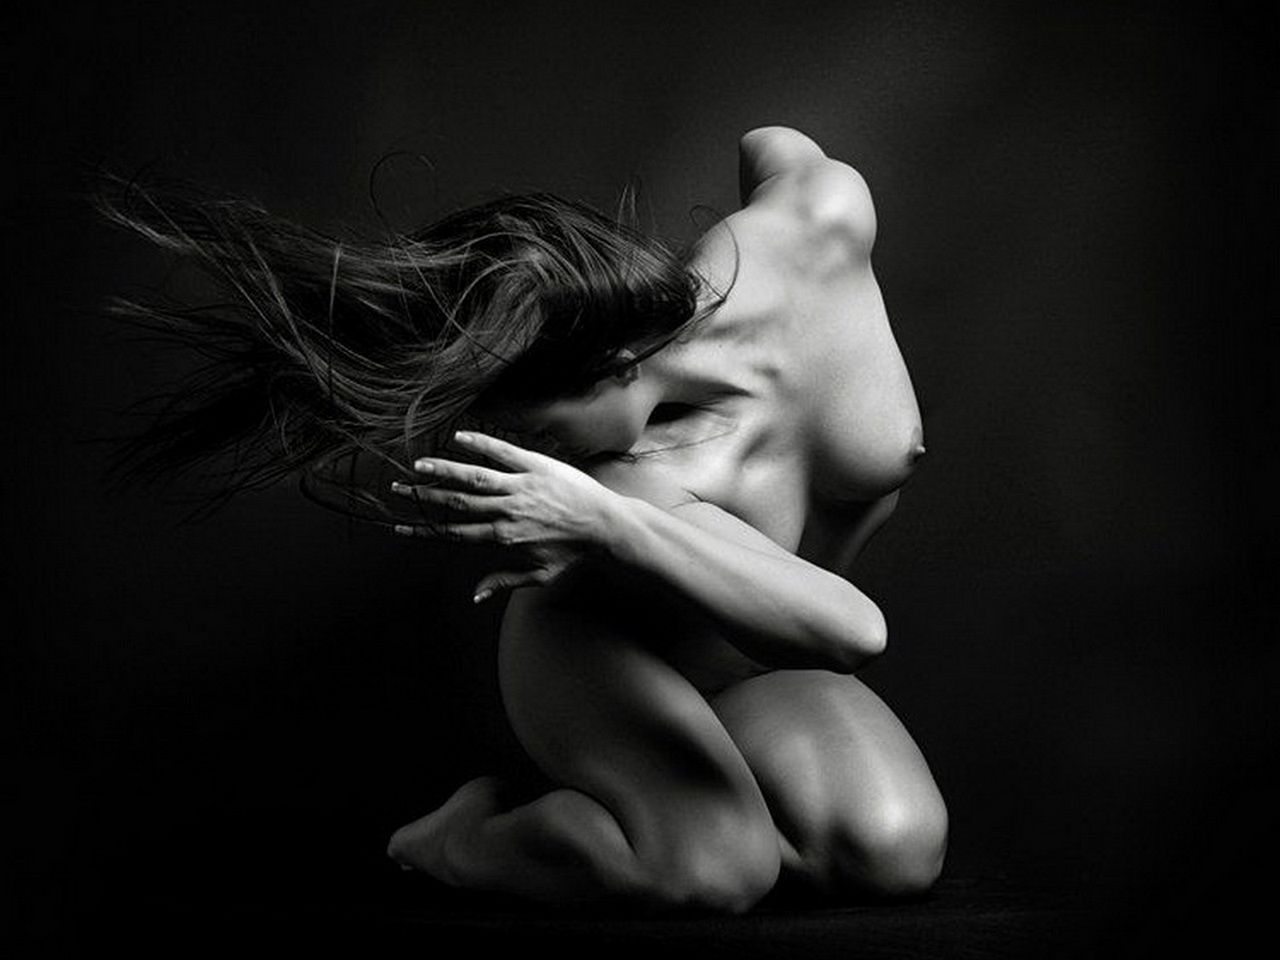 смущение. черно-белое художественное фото обнаженной девушки в странной позе